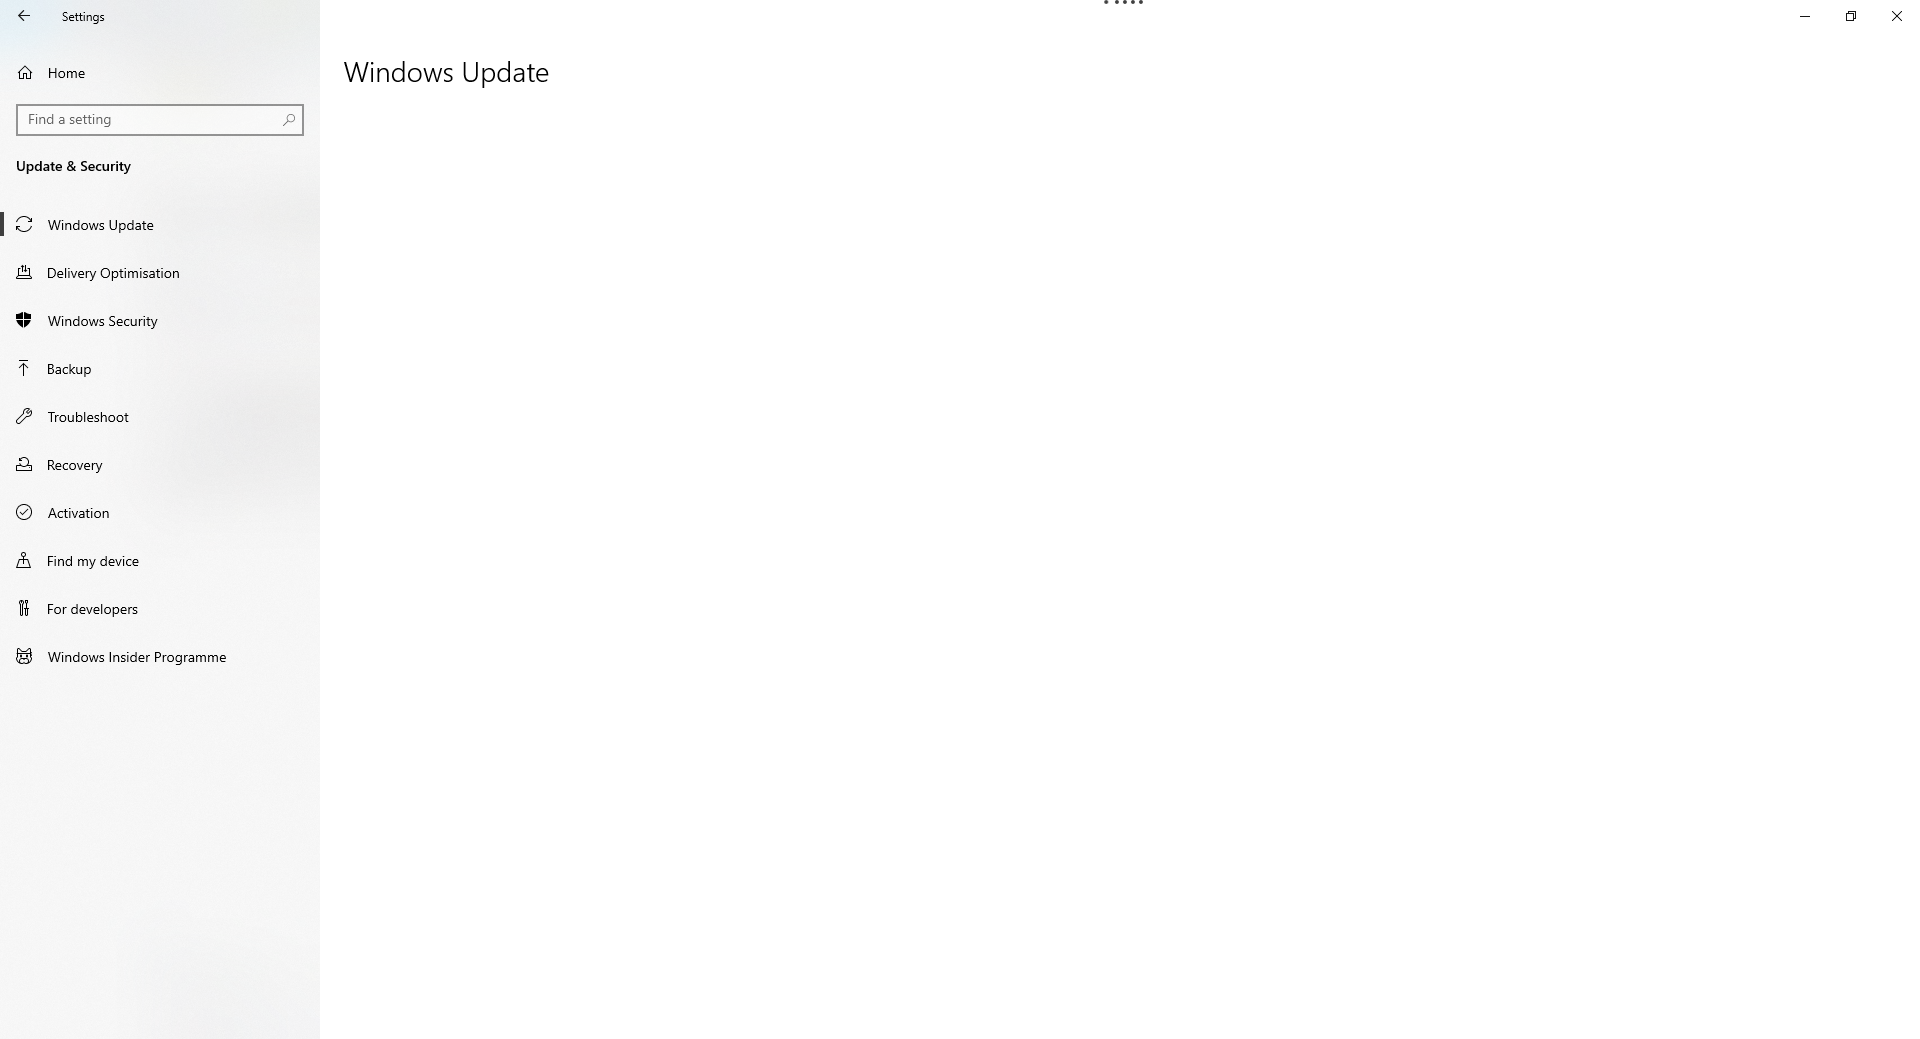 Windows Update doesn't load in Update & Security a0c74070-d407-4ee5-8c52-cda9d583f93b?upload=true.png